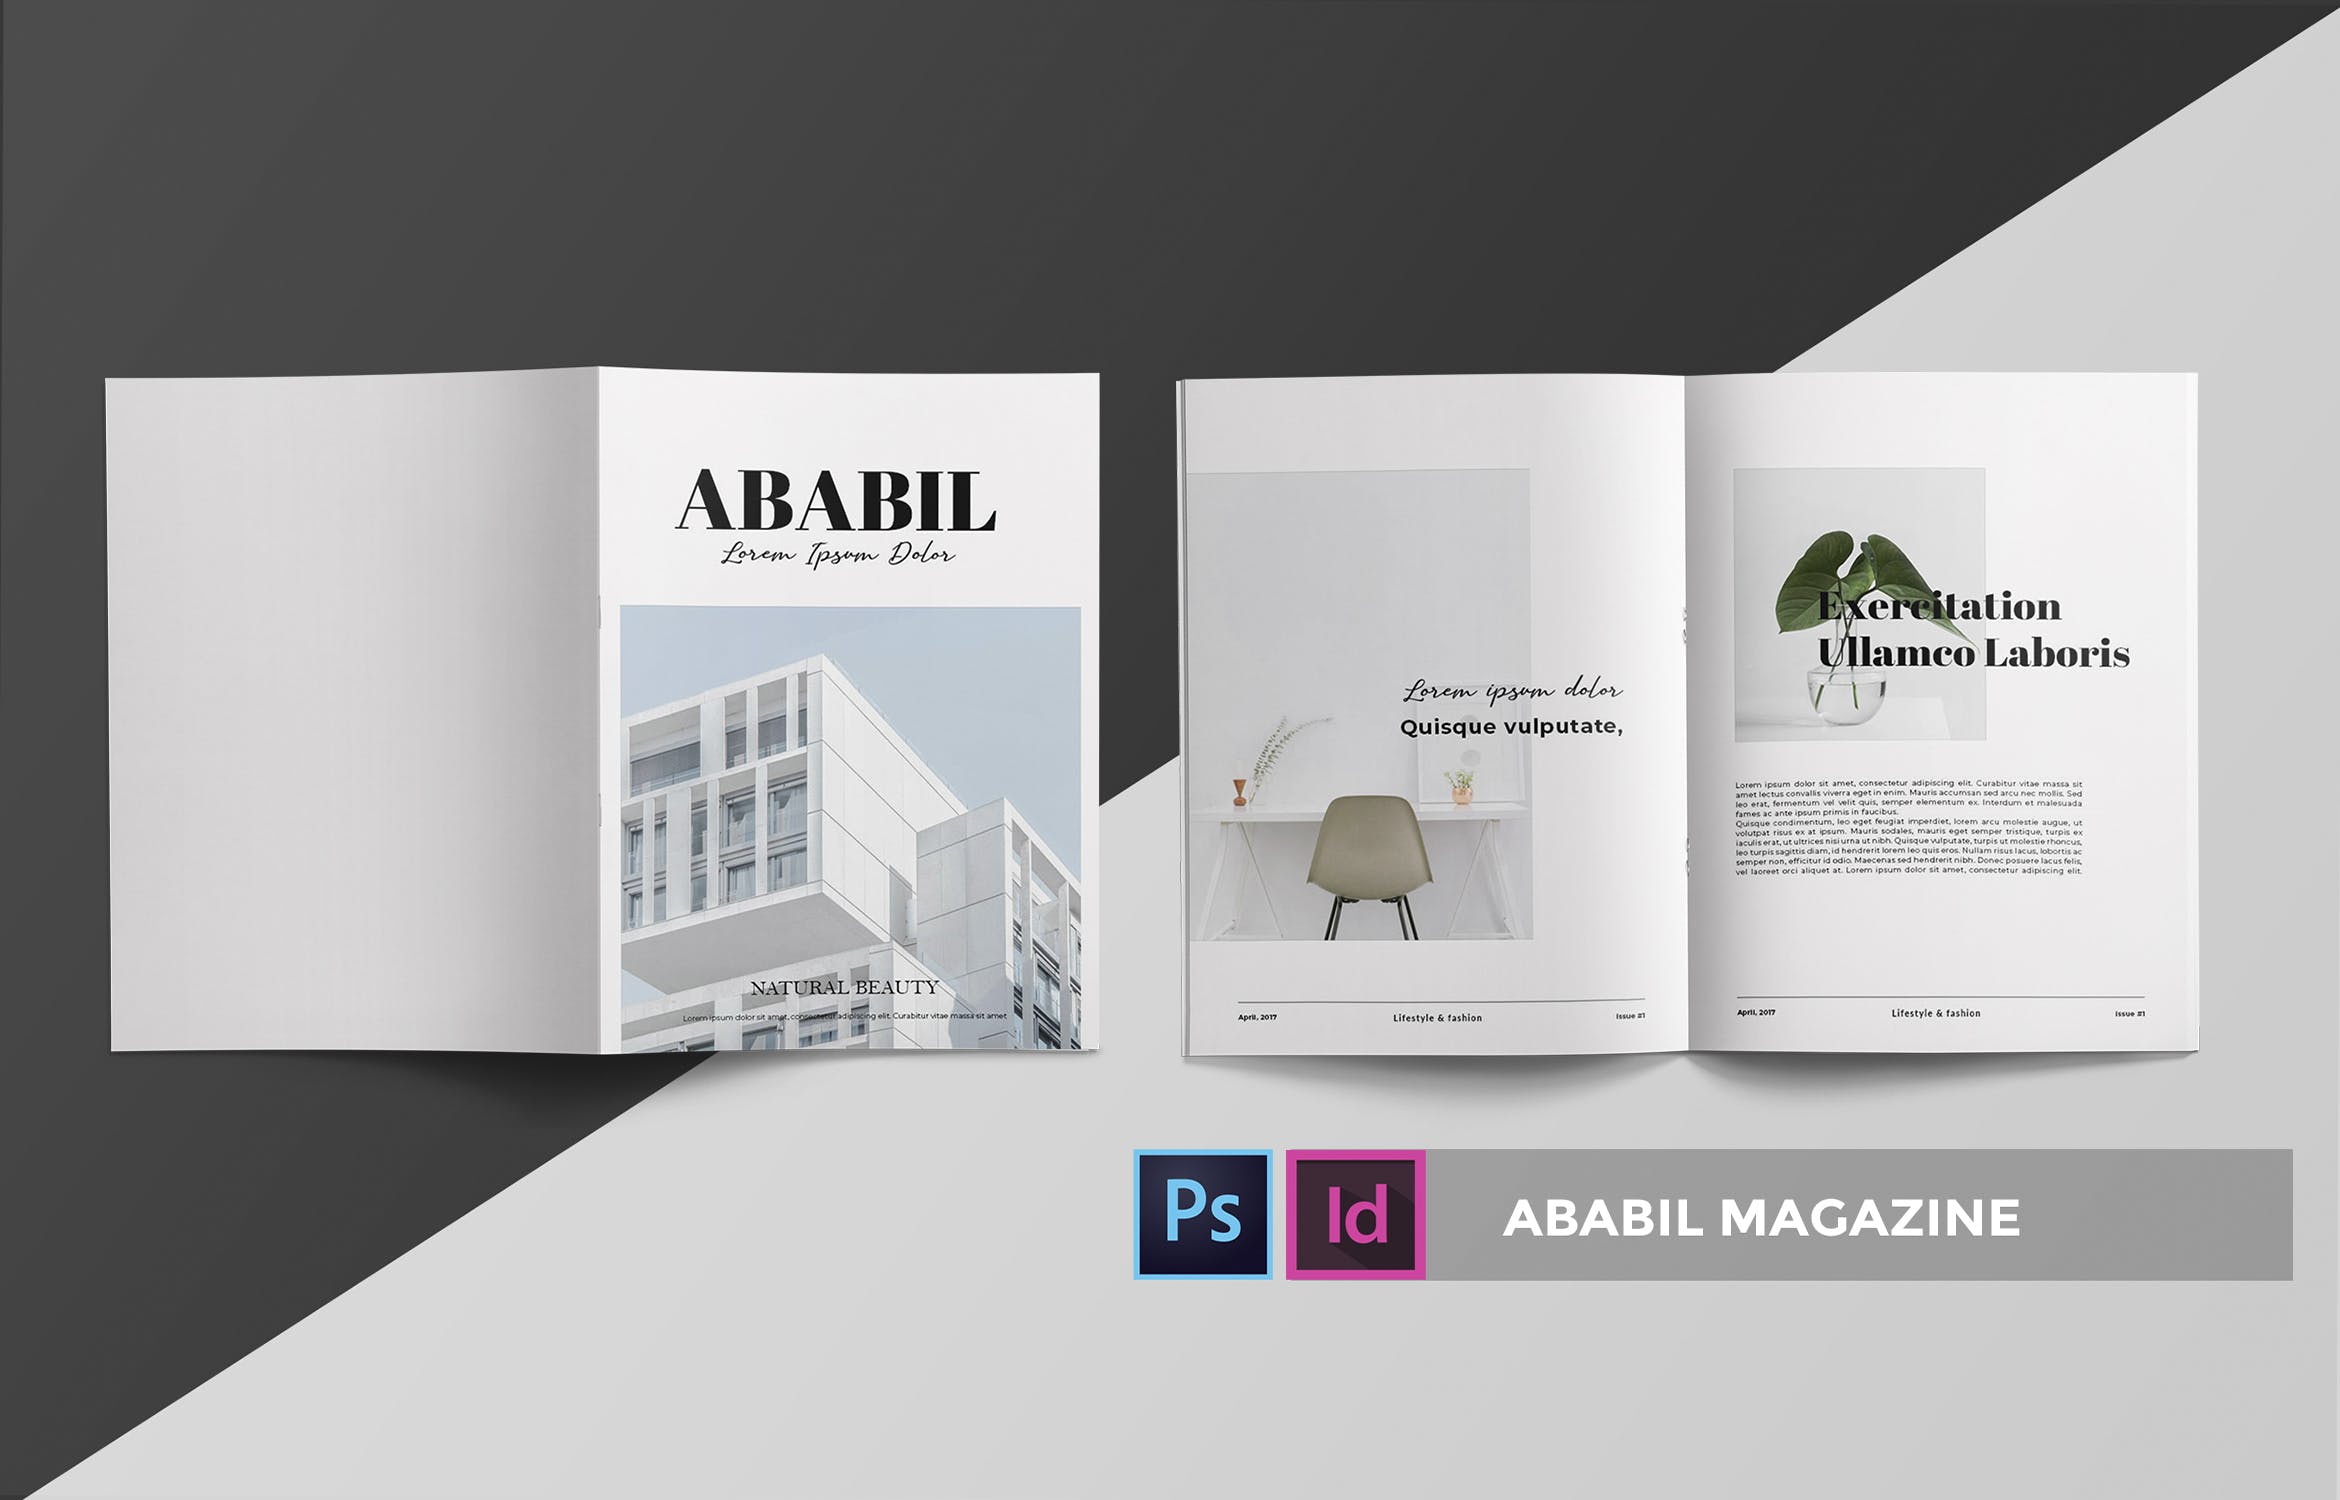 高端建筑/设计/房地产主题素材库精选杂志排版设计INDD模板 ABABIL | Magazine Template插图(2)